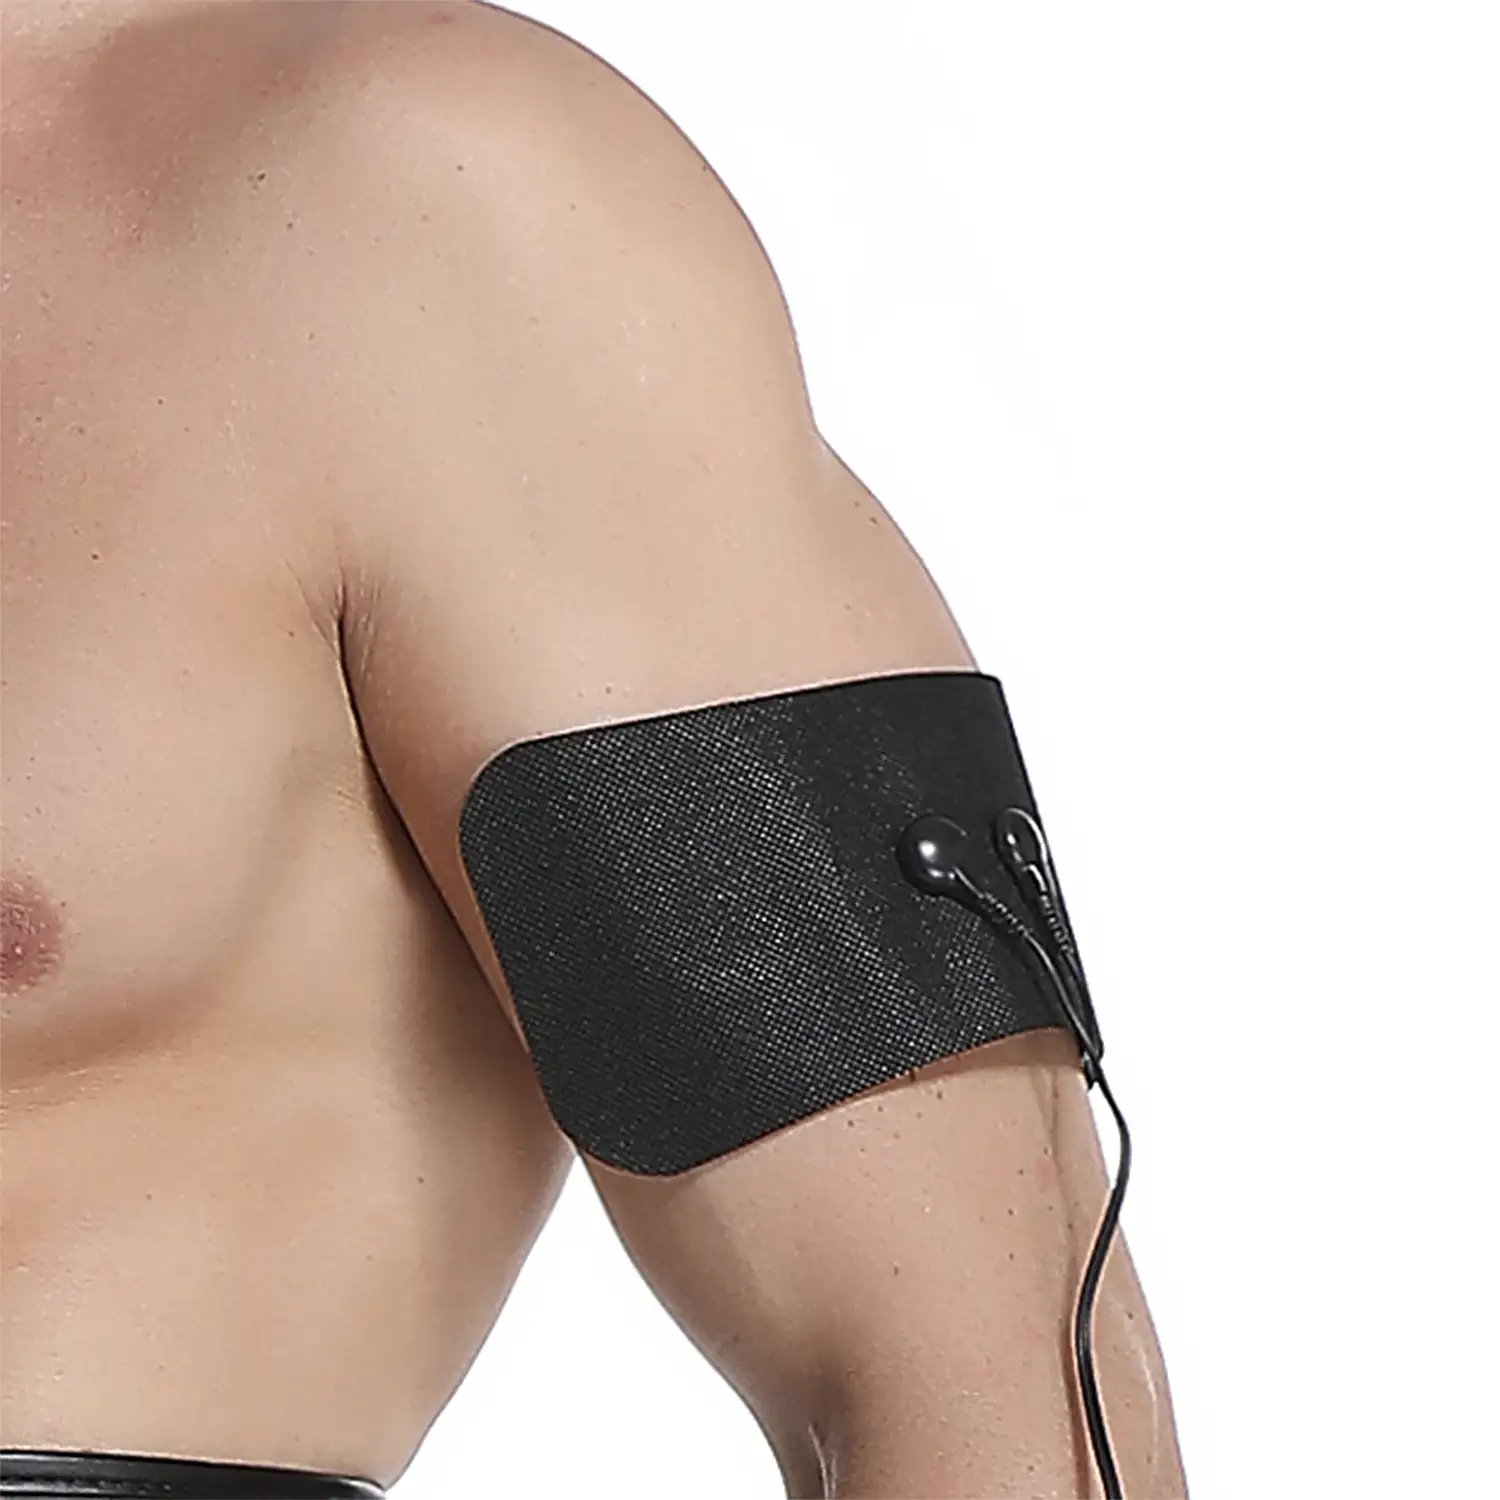 Estimulador electrónico EMS para cuello, espalda, brazo y pierna. Ayuda a aliviar el dolor muscular y la fatiga. Alimentación con pilas.